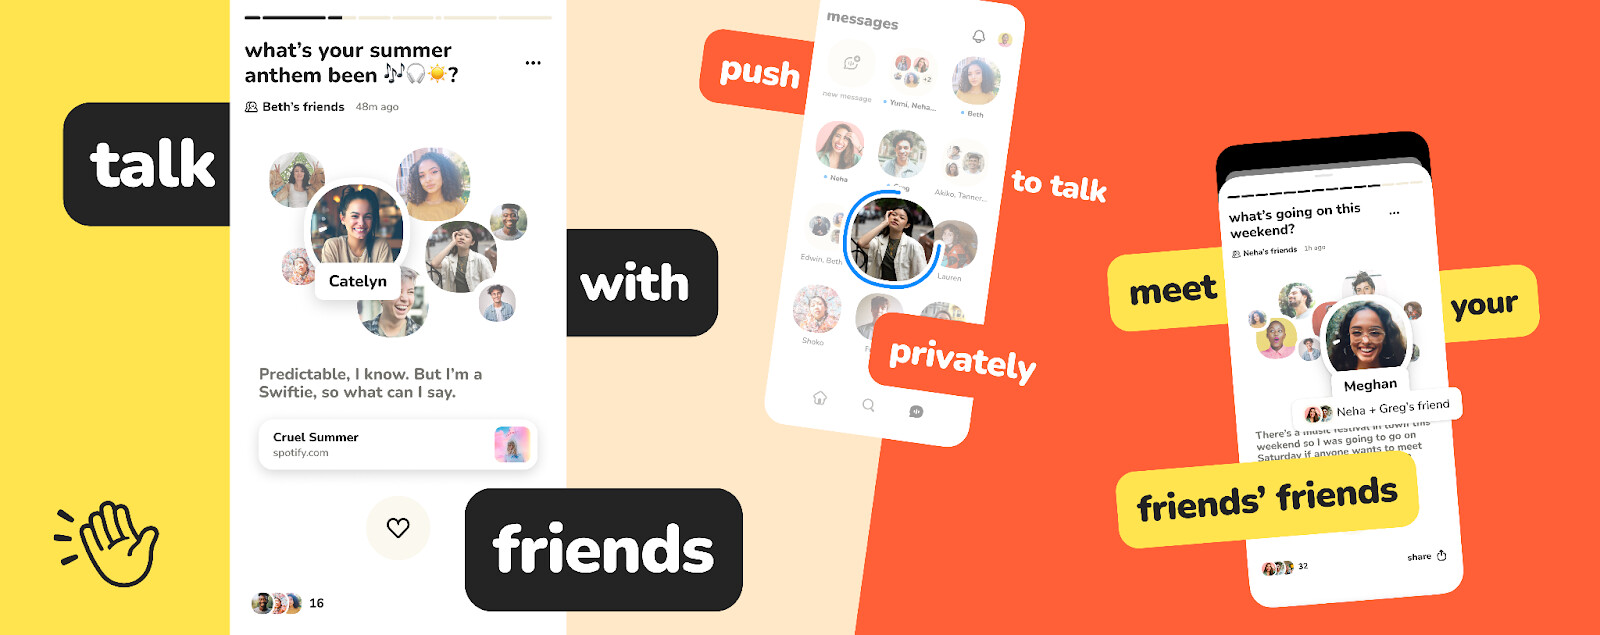 Clubhouse erhält eine umfassende Neugestaltung mit Schwerpunkt auf Gruppen-Audio-Chats und "Freunde statt Follower"